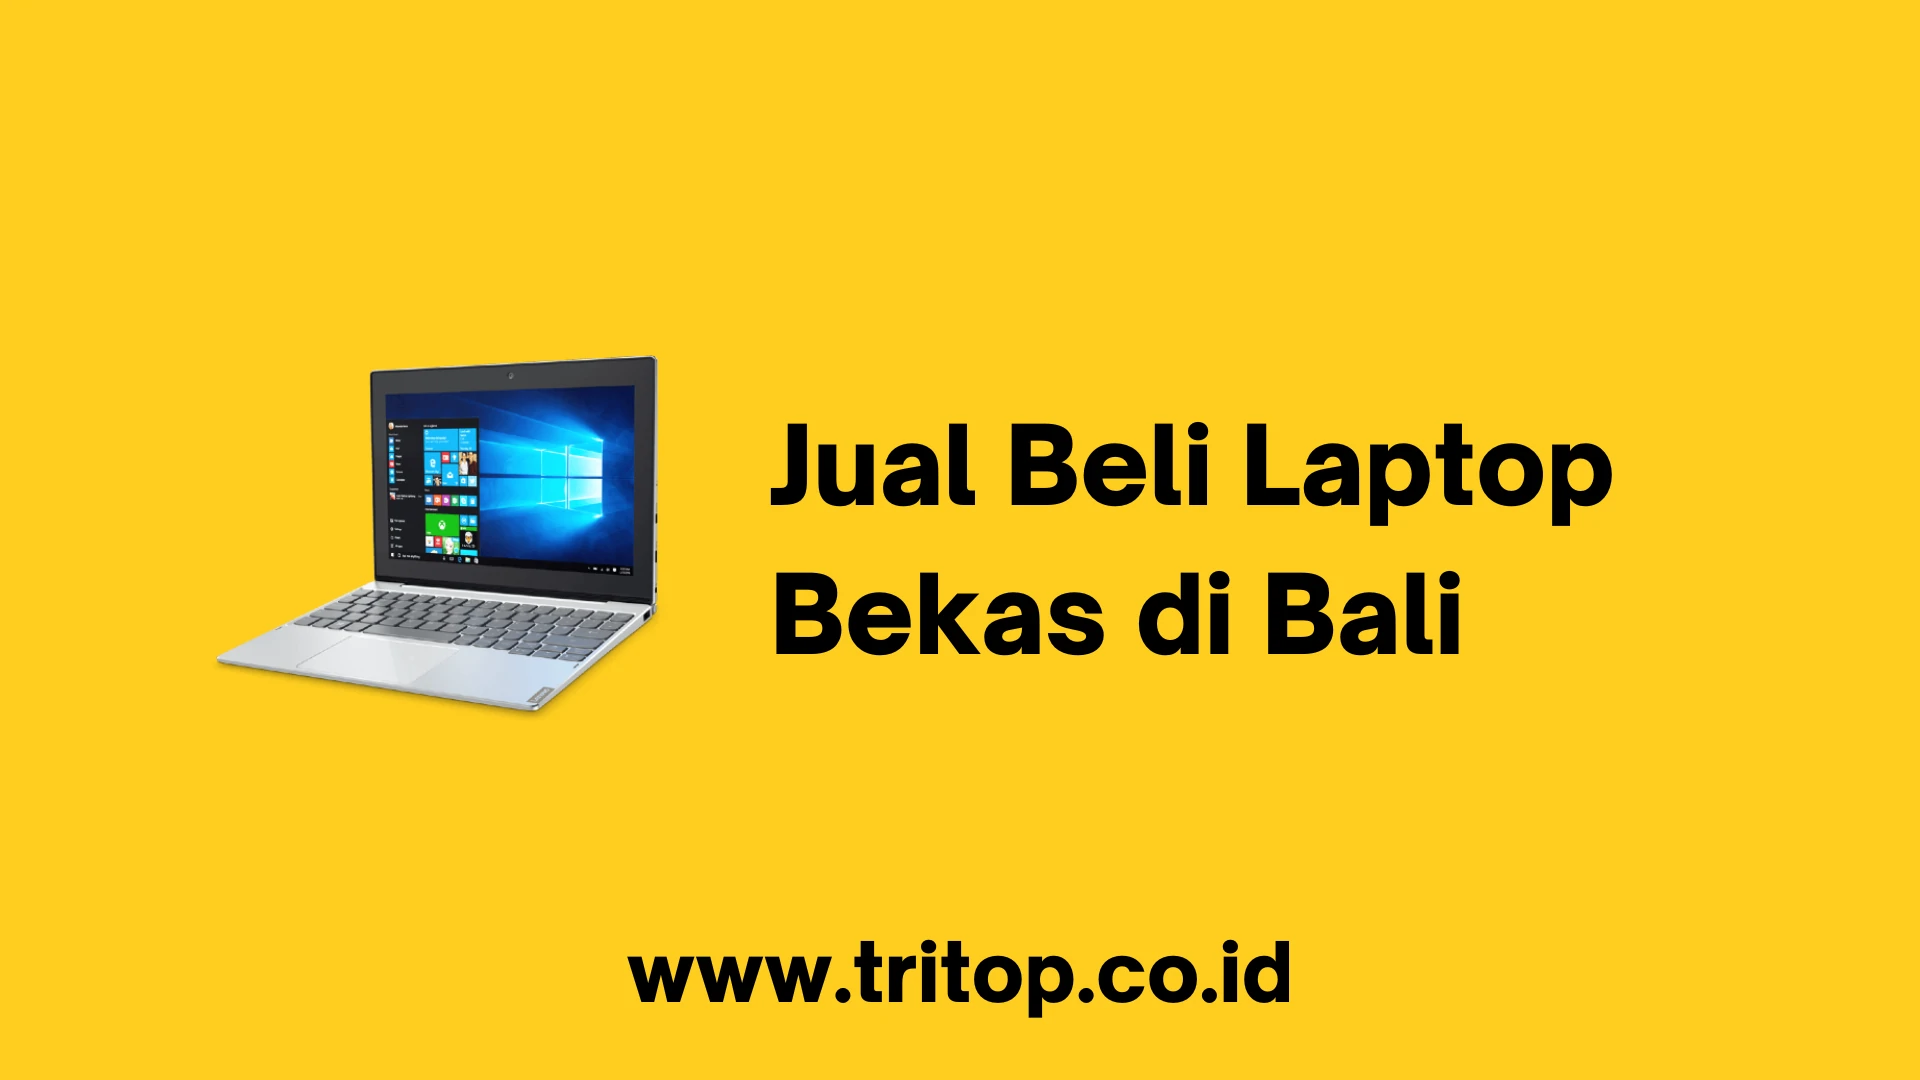 Jual Beli Laptop Bekas di Bali